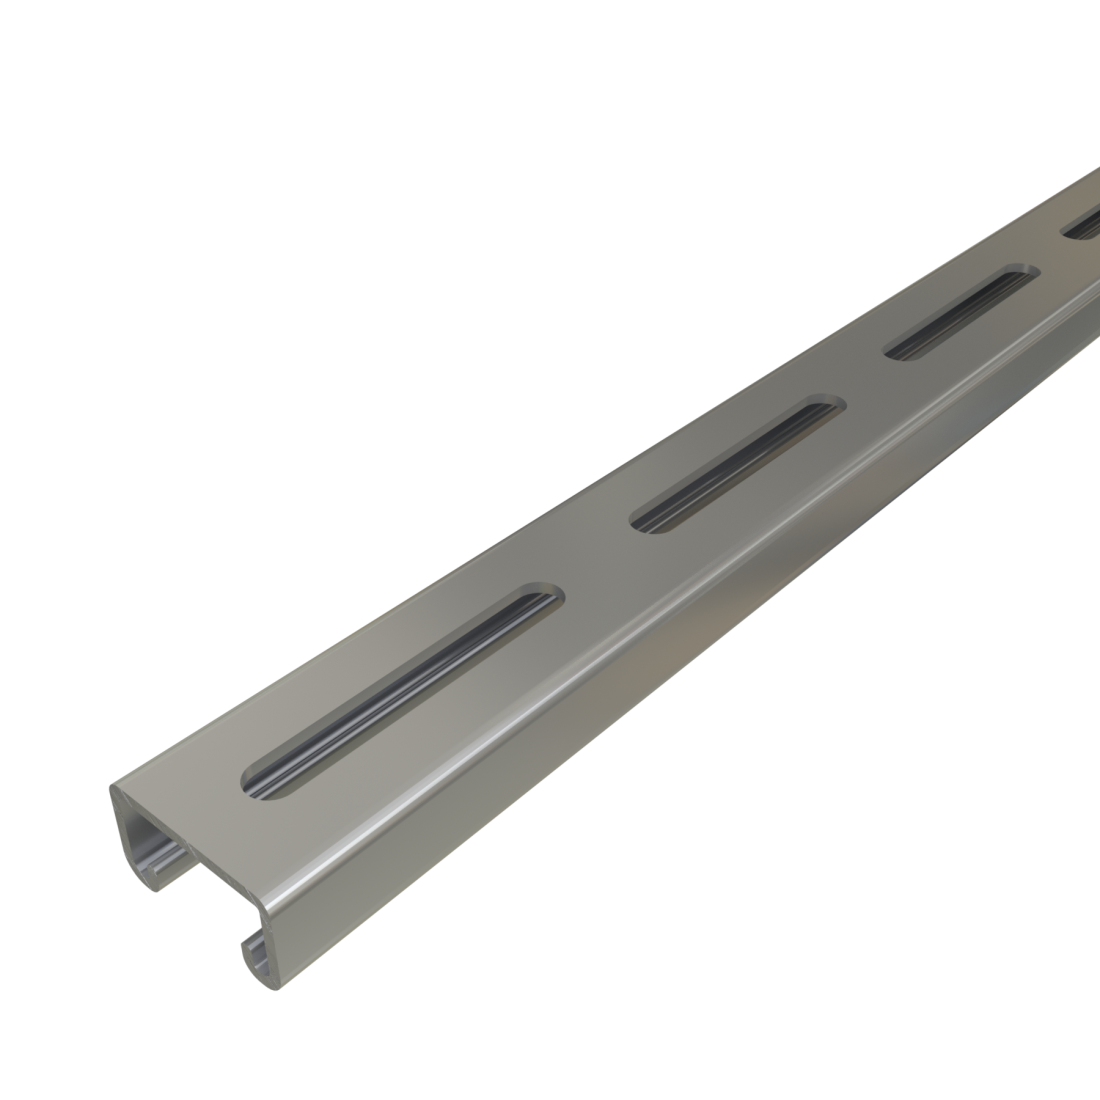 Unistrut P3300SL - 1-5/8" x 7/8", 12 Gauge Metal Framing Strut, Long Slots